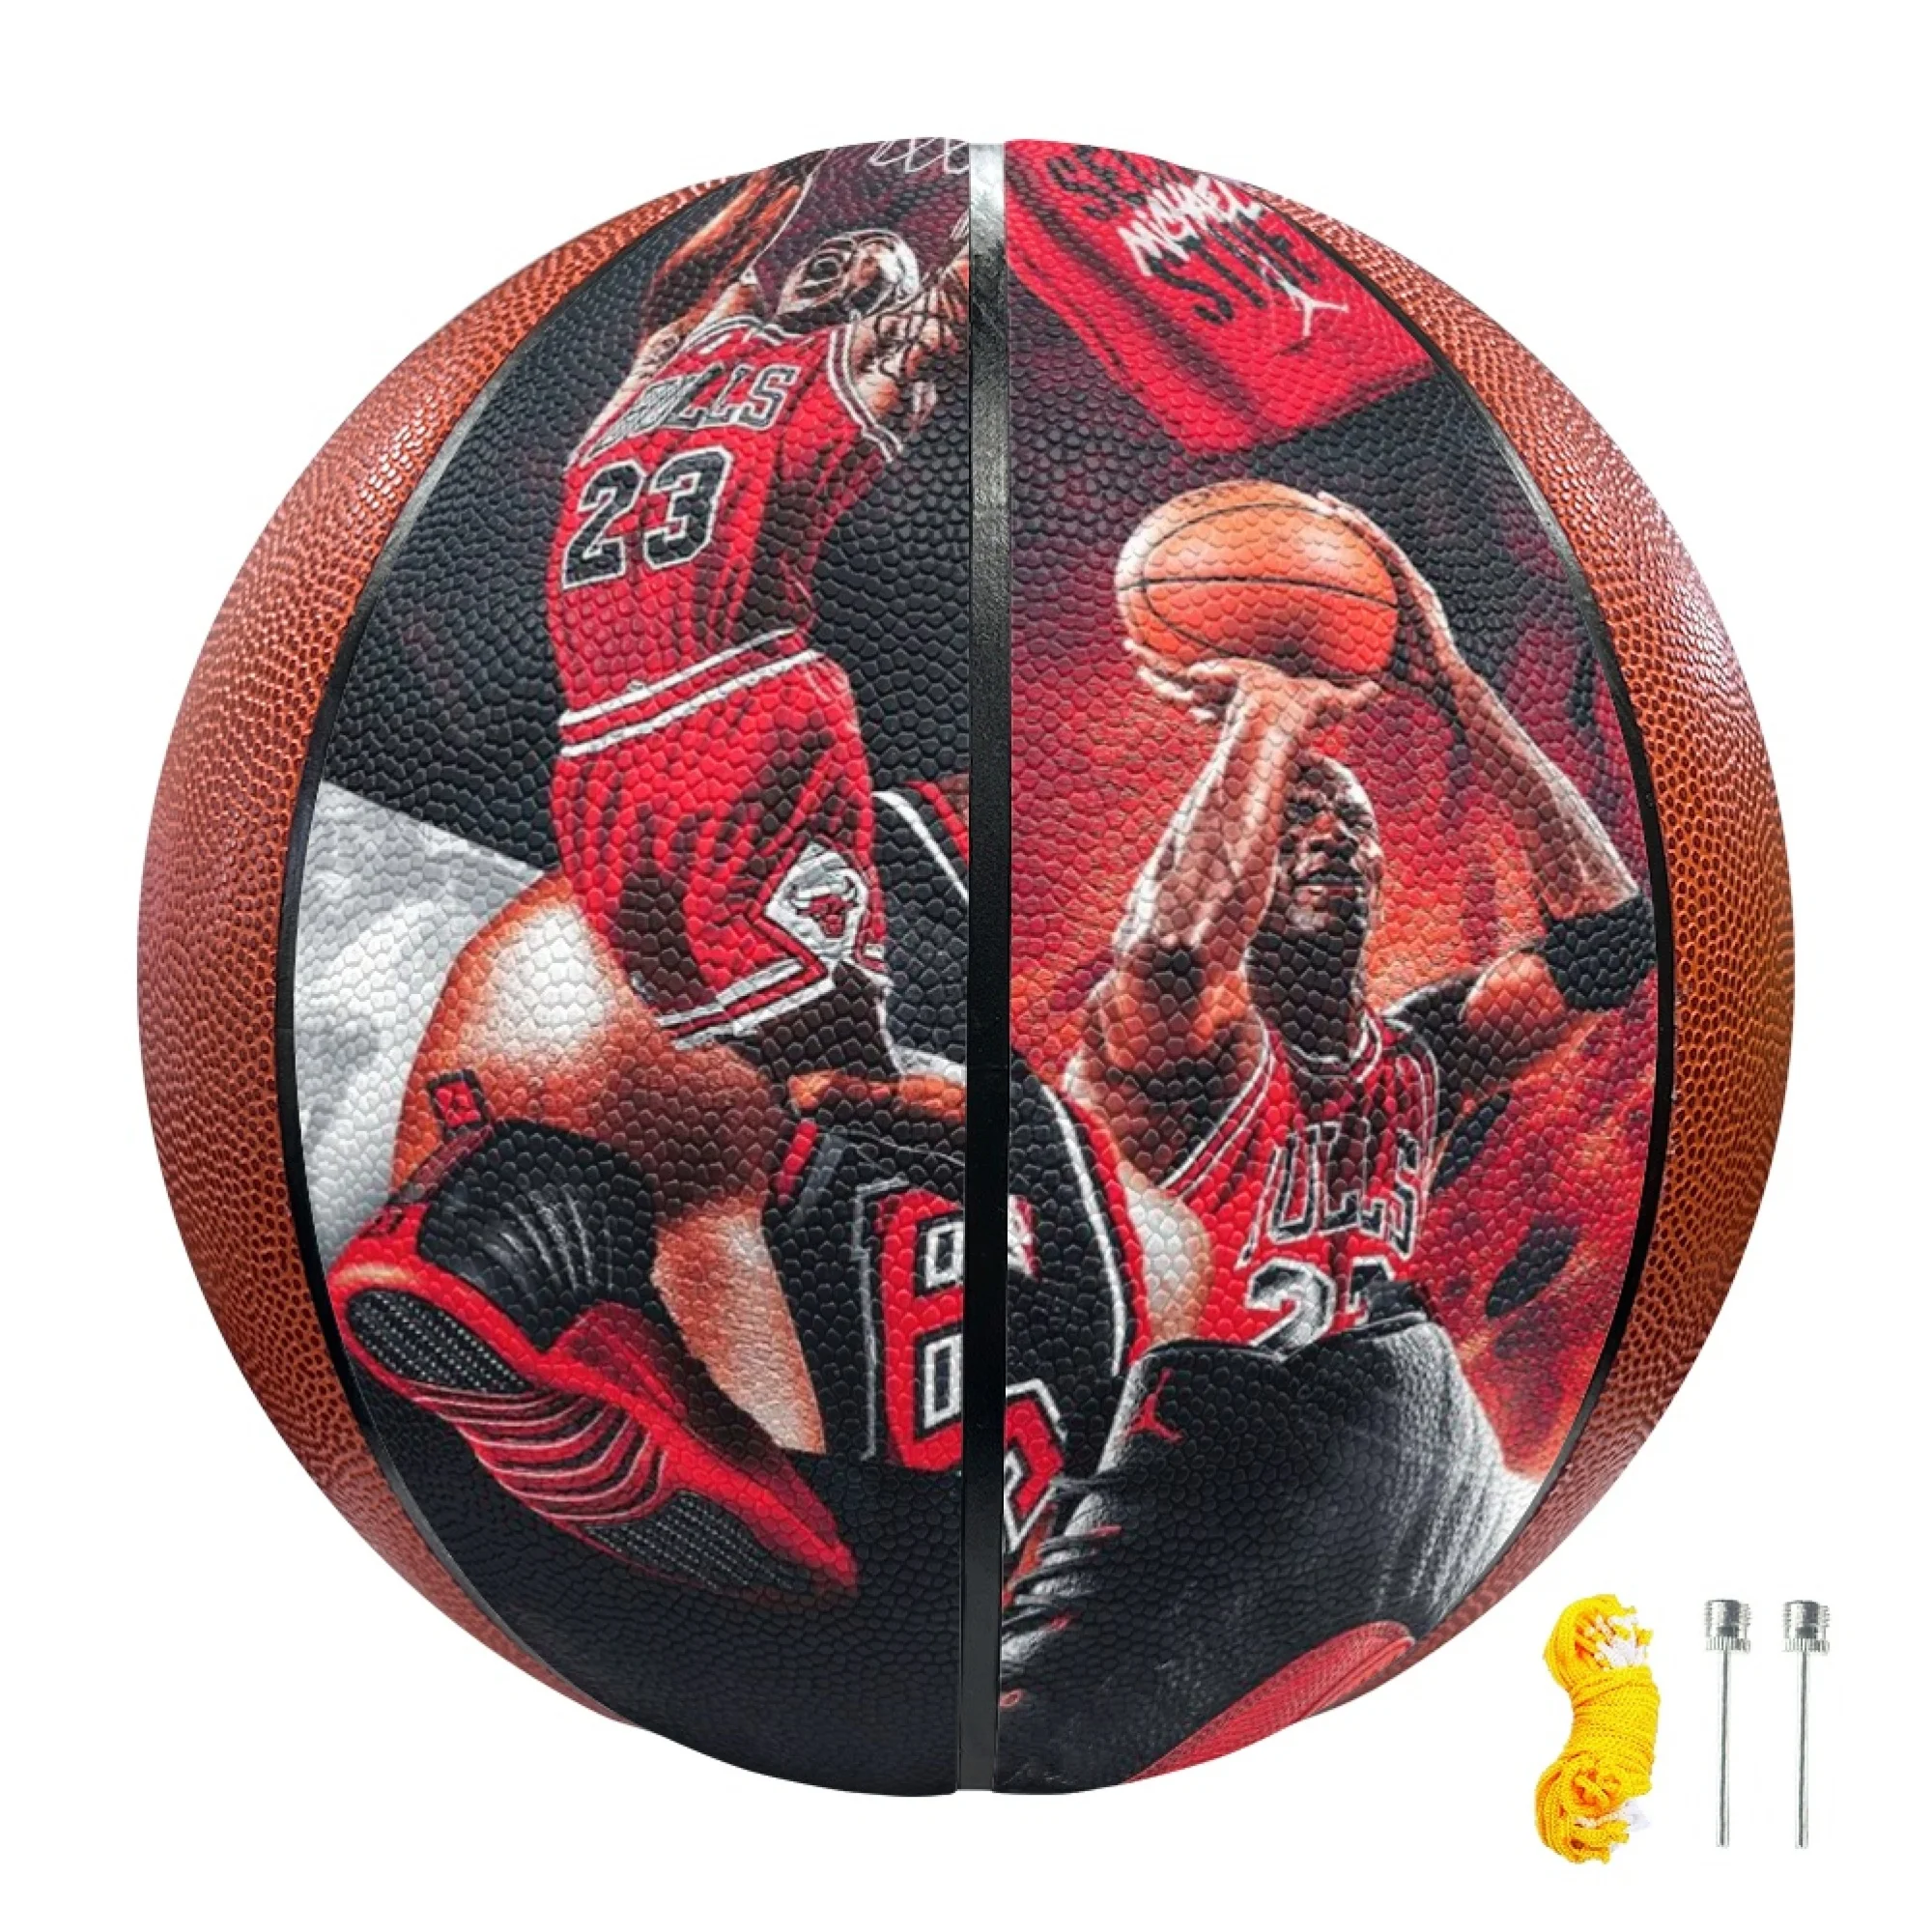 Изготовленный На заказ Абсолютно новый Высококачественный баскетбольный мяч нестандартного размера Из кожи Для игры на открытом воздухе в помещении, тренировочный мужской и женский молодежный баскетбольный мяч